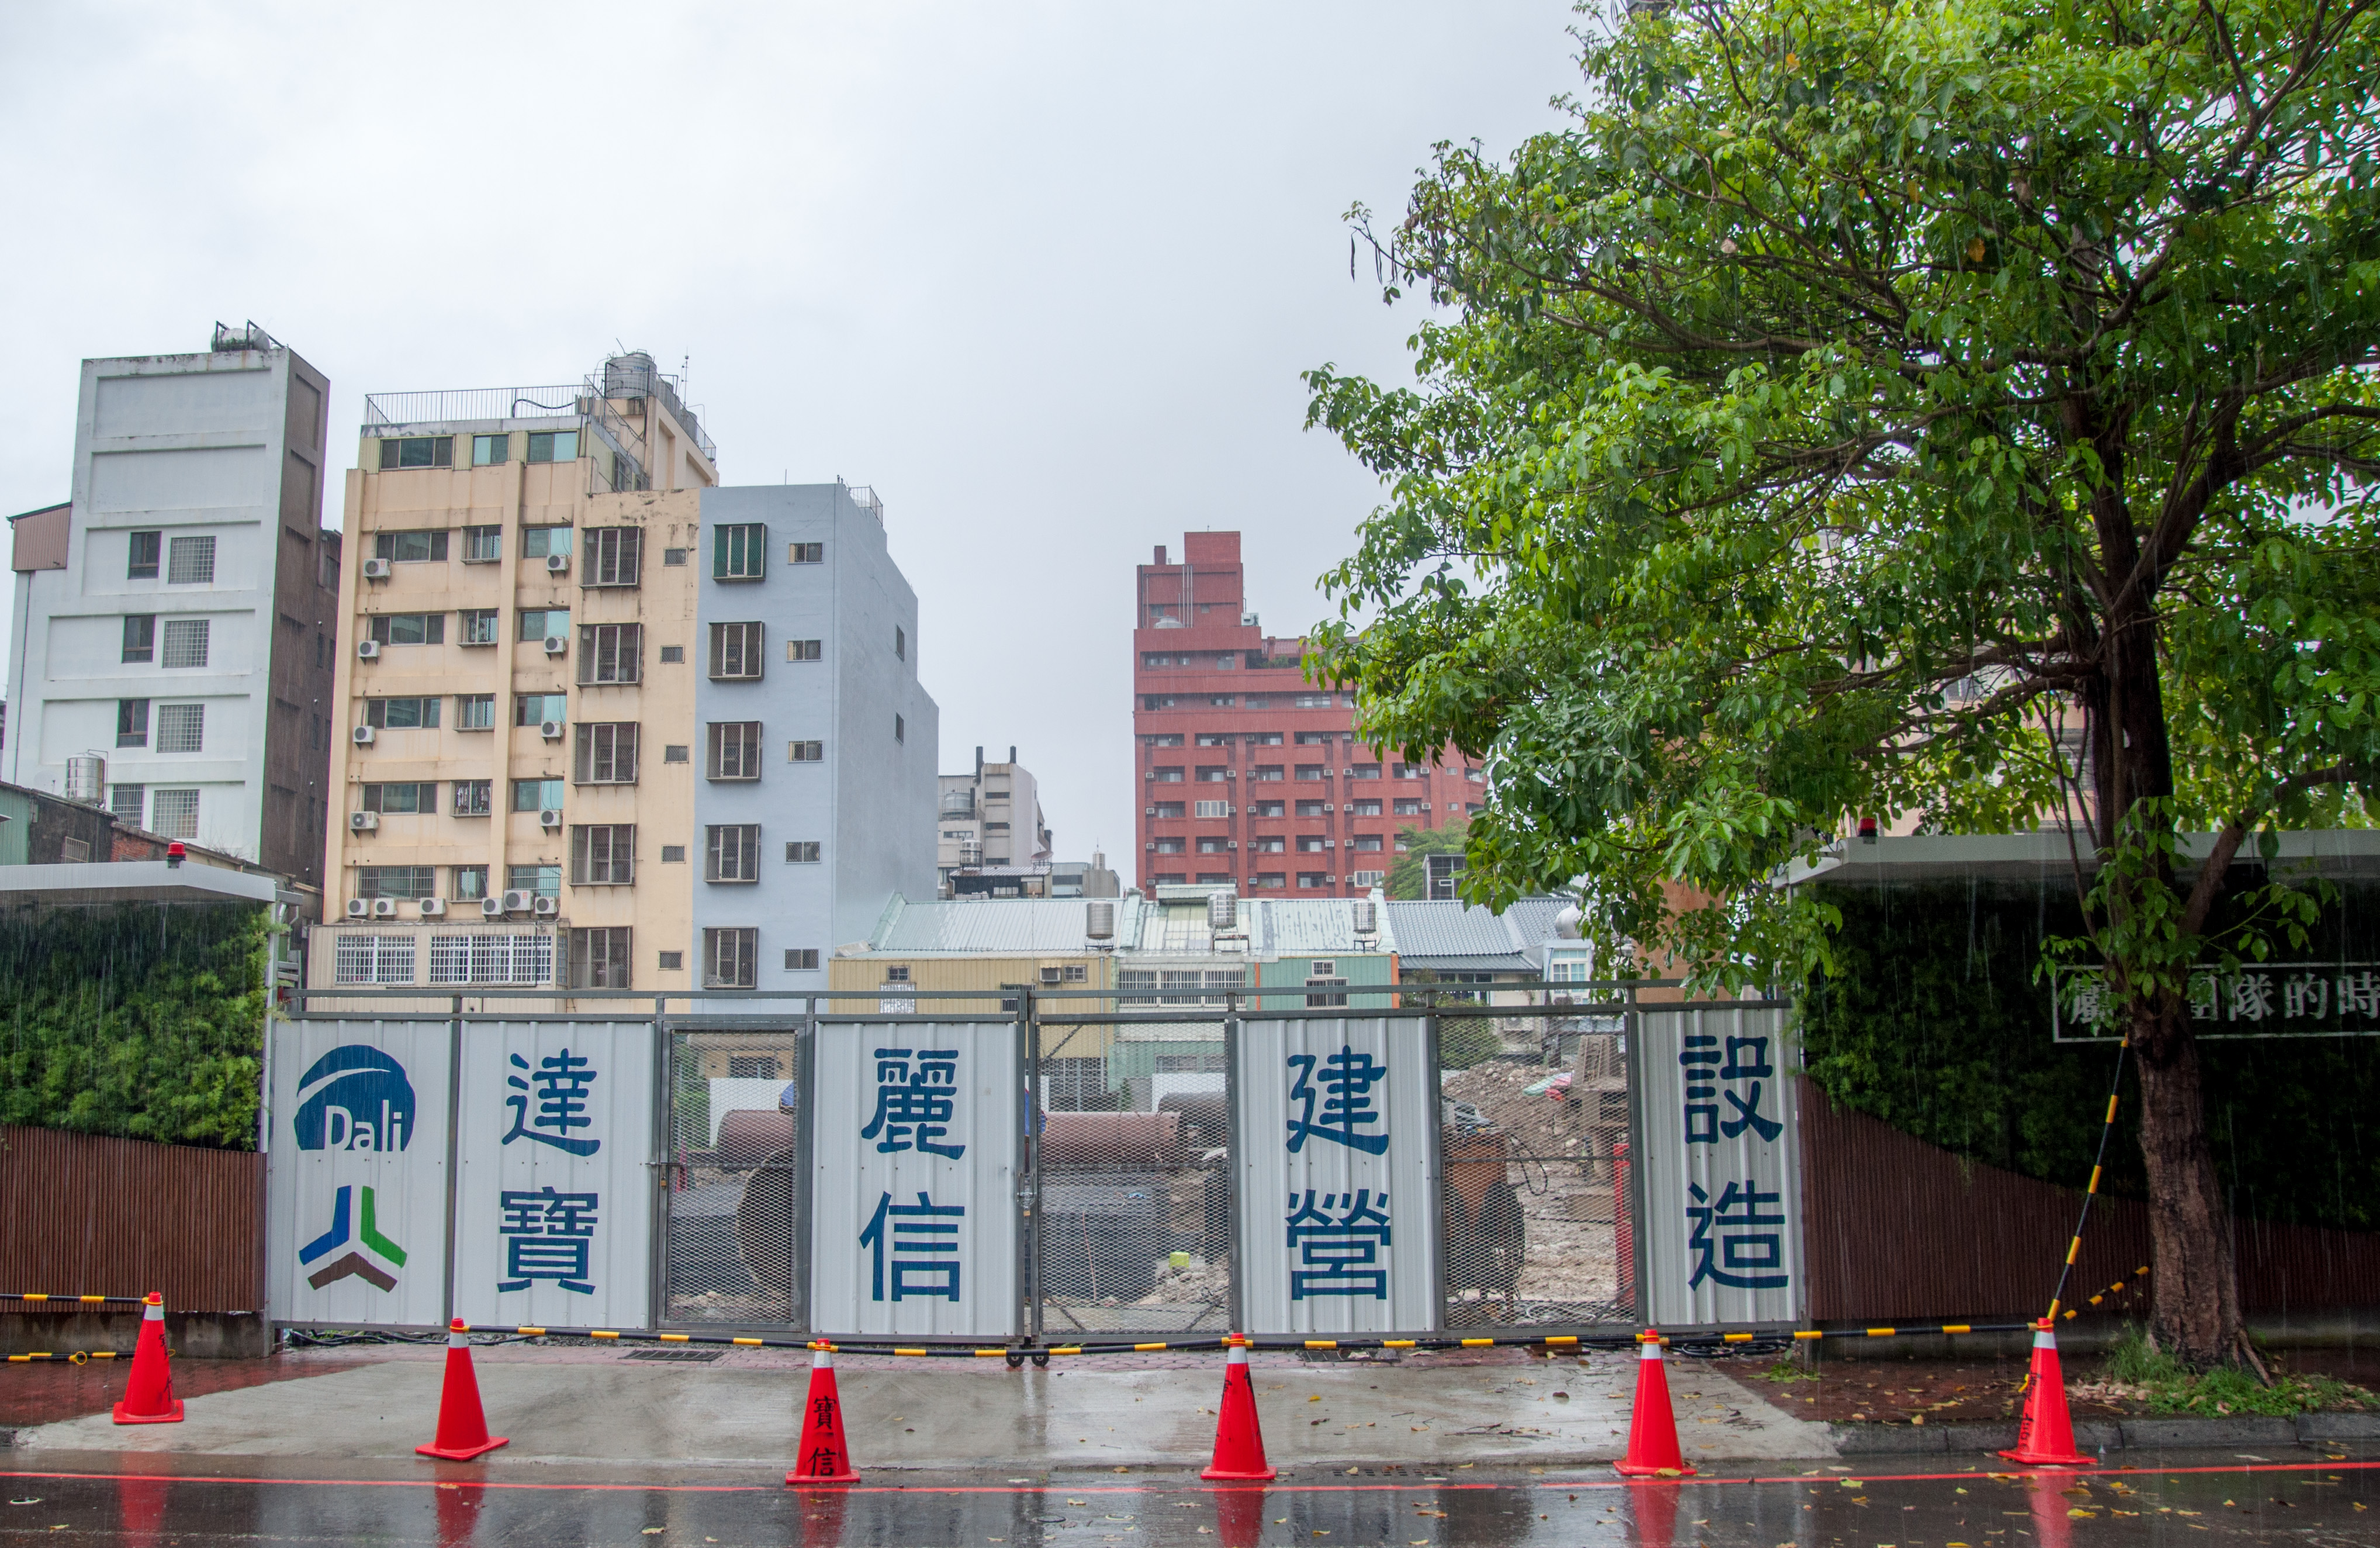 圖片:建案搶先看|達麗冶翠 科博館人文綠富 育德園道首排 中國醫生活圈